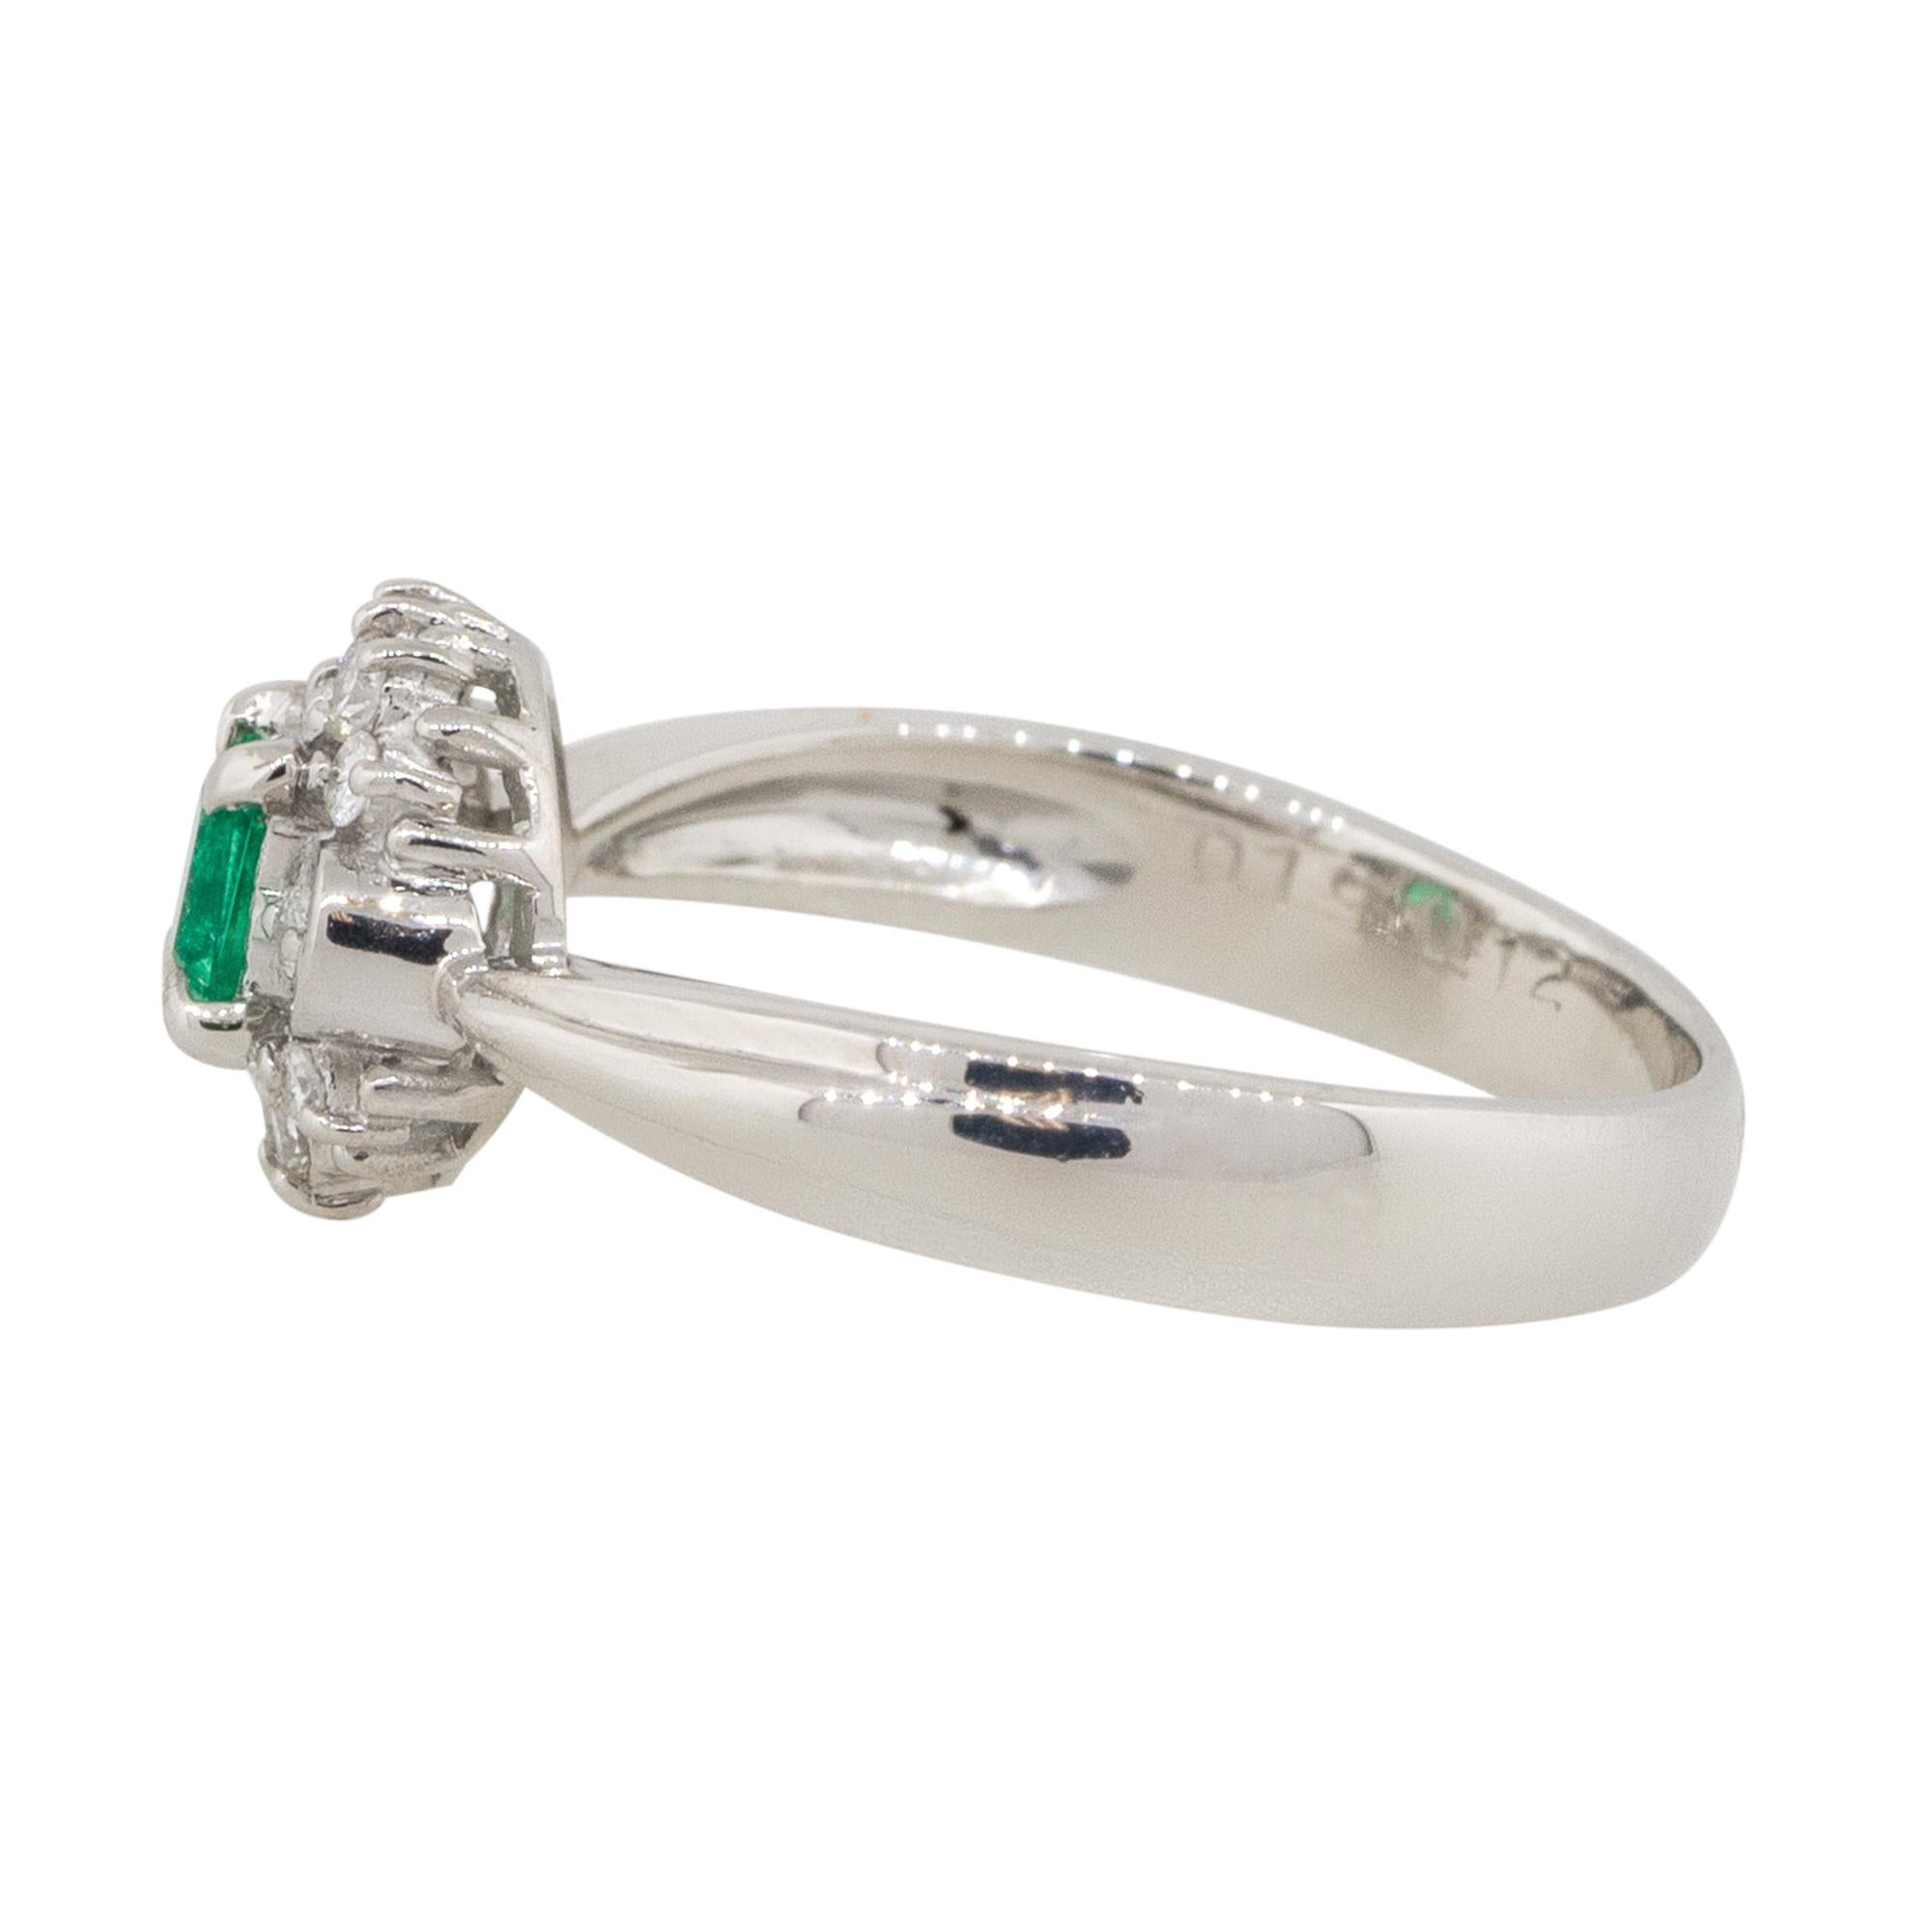 Emerald Cut 0.19 Carat Emerald Center Diamond Cocktail Ring Platinum in Stock